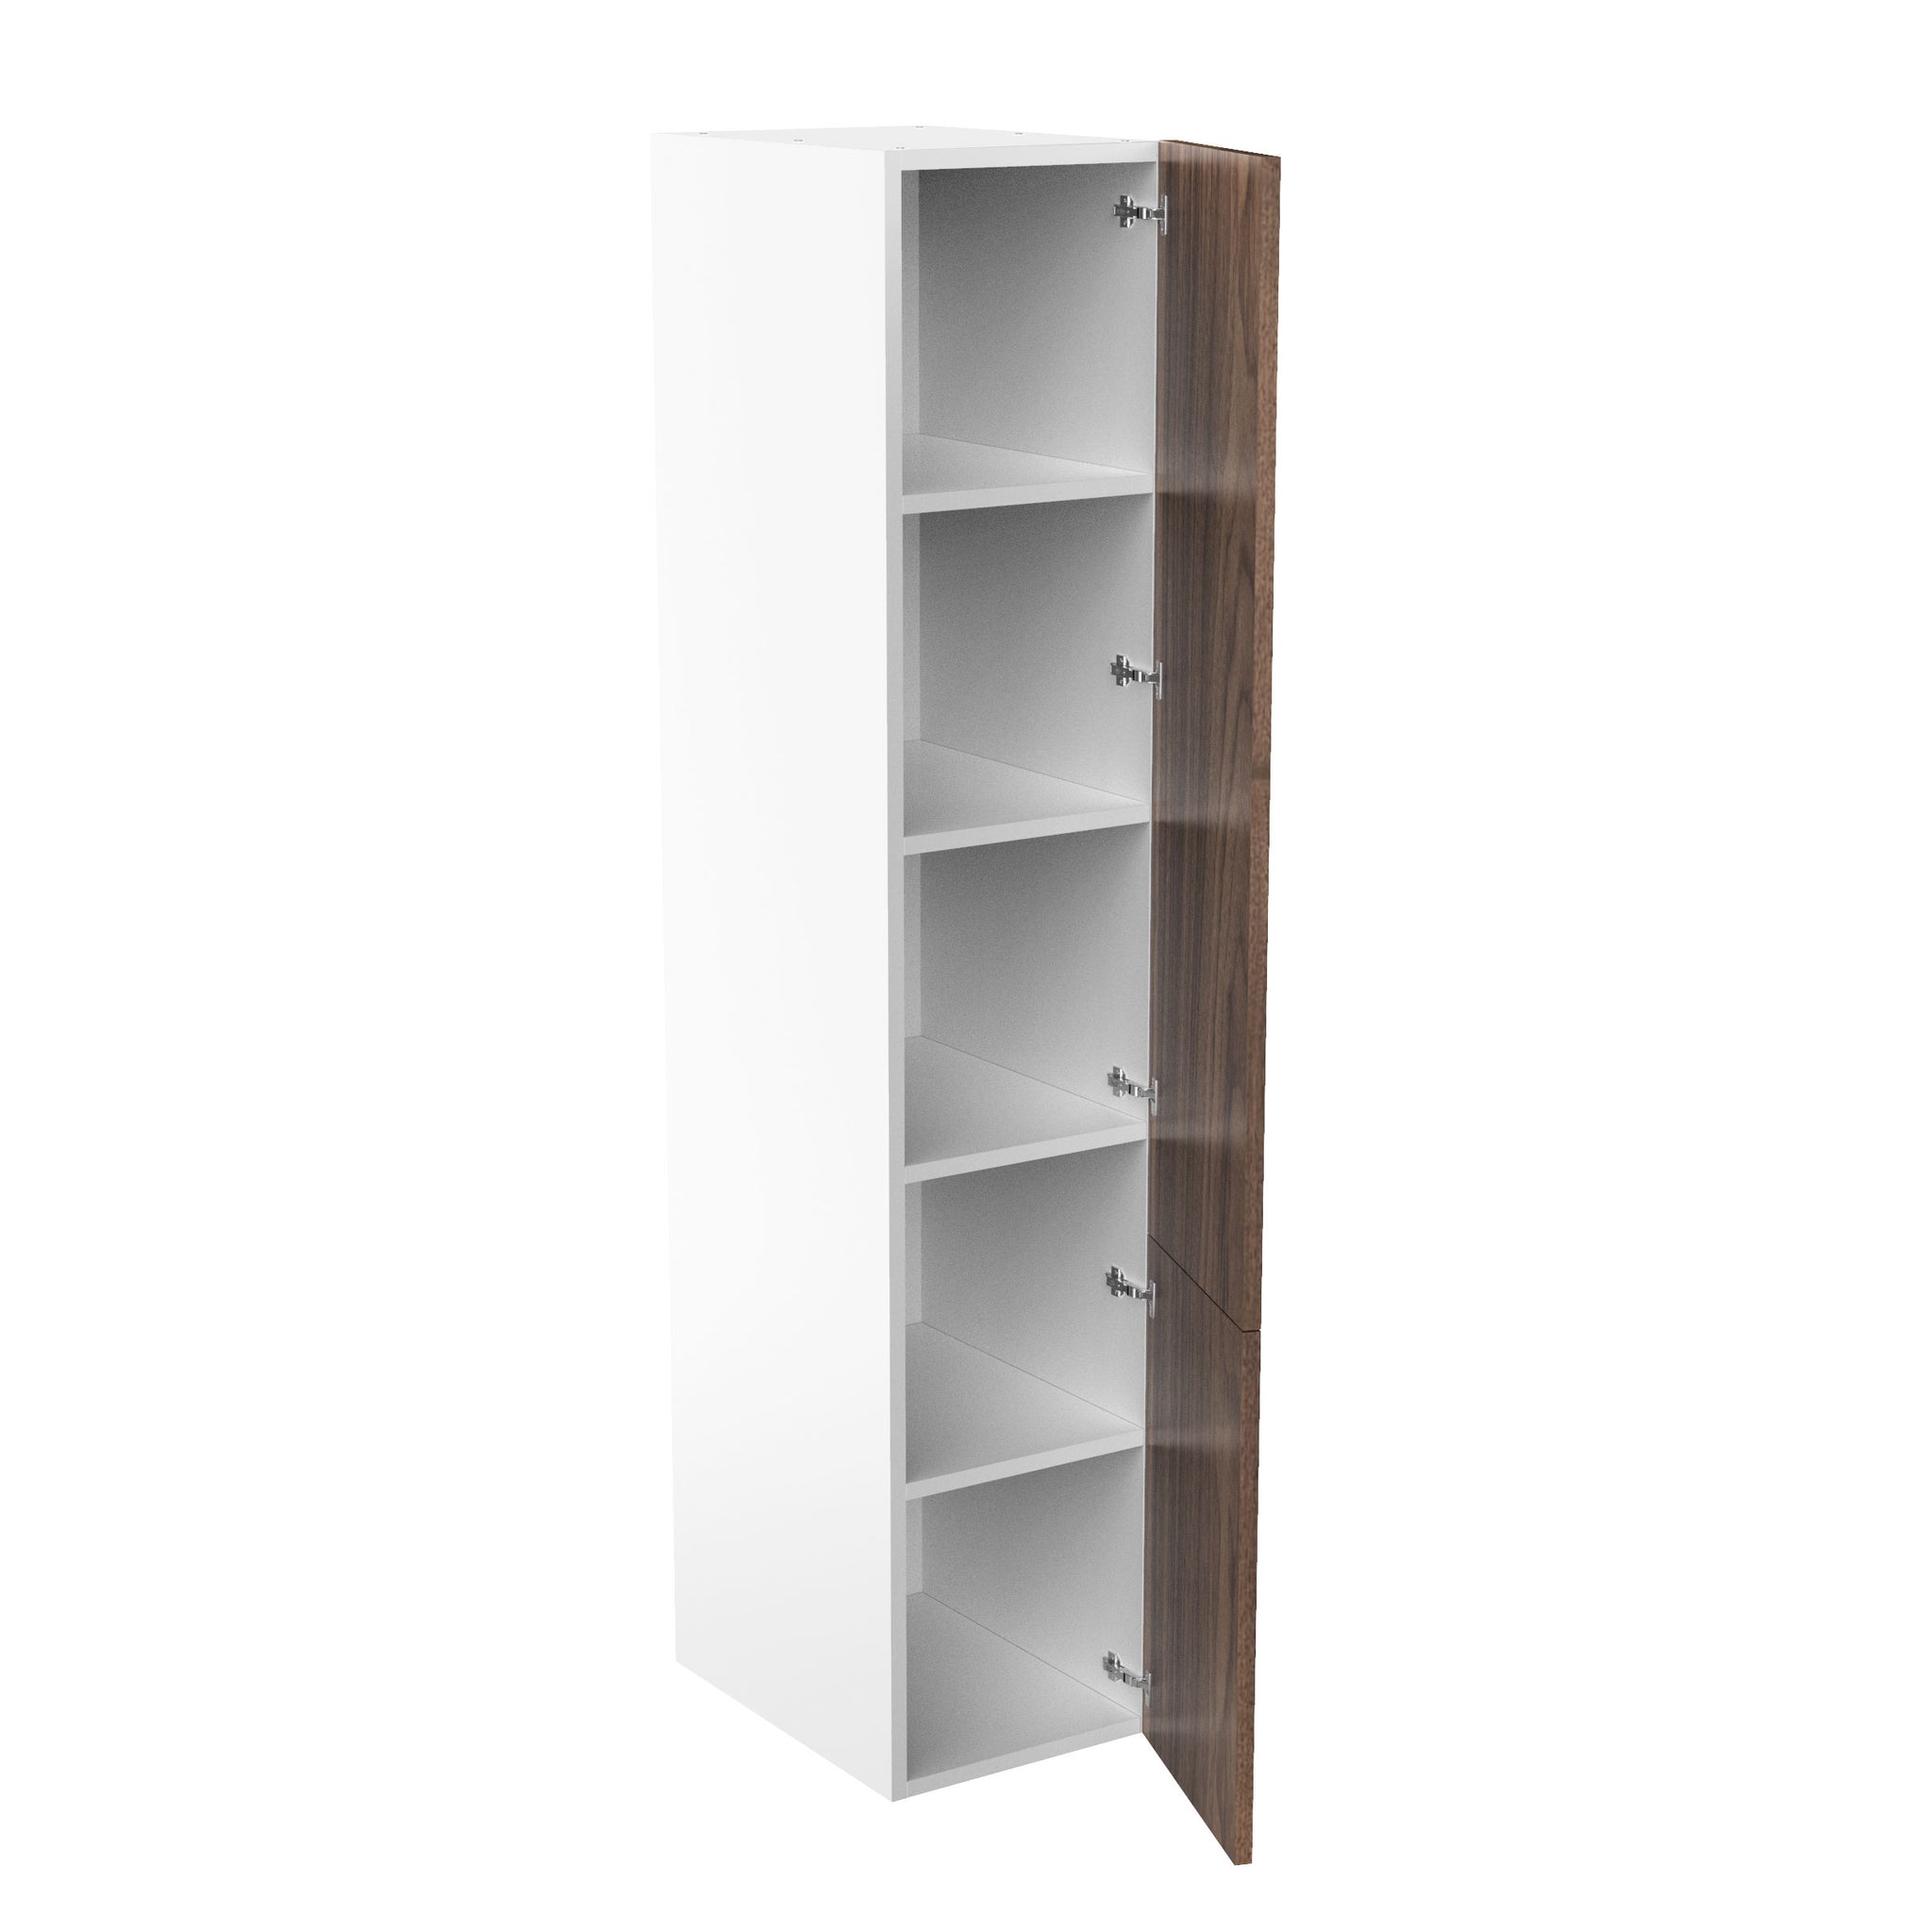 RTA Walnut Cabinet - Single Door Tall Cabinets | 18"W x 90"H x 24"D